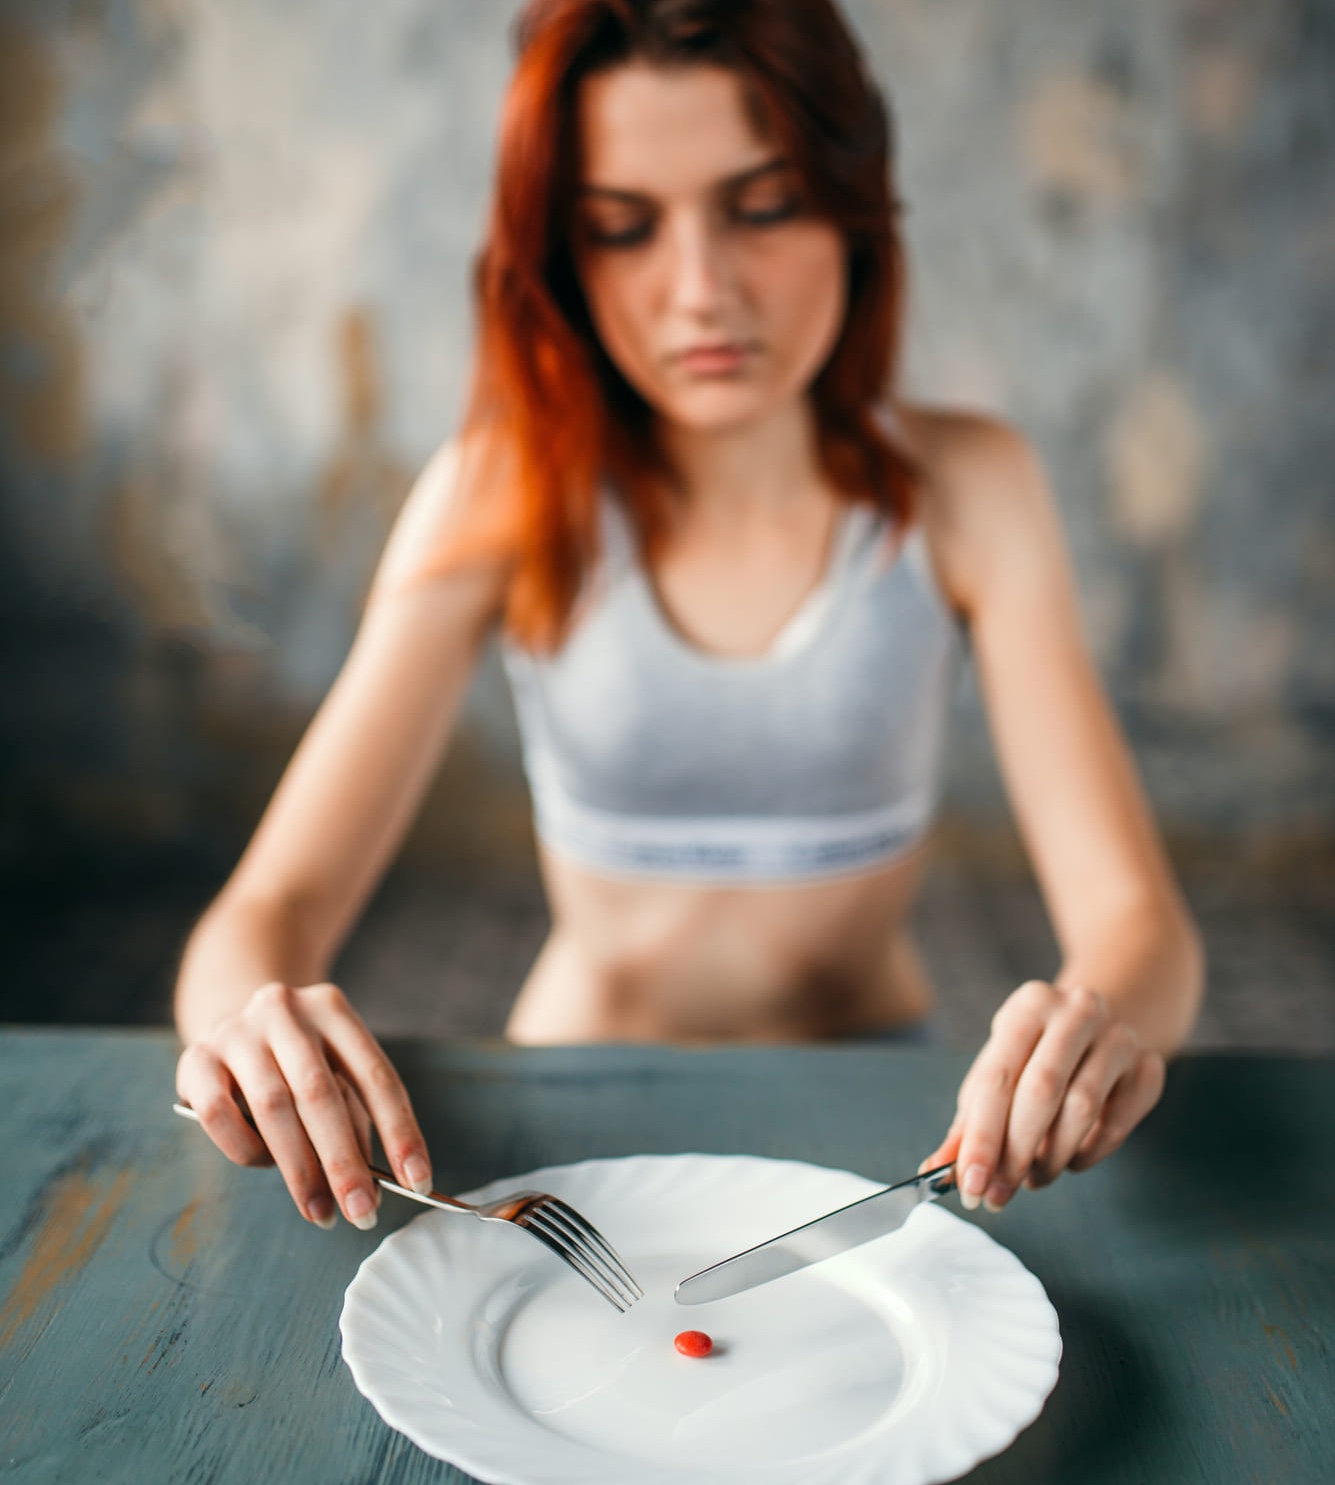 Magersucht! Meine Freundin isst kaum noch was – weil sie zu wenig Selbstvertrauen hat?